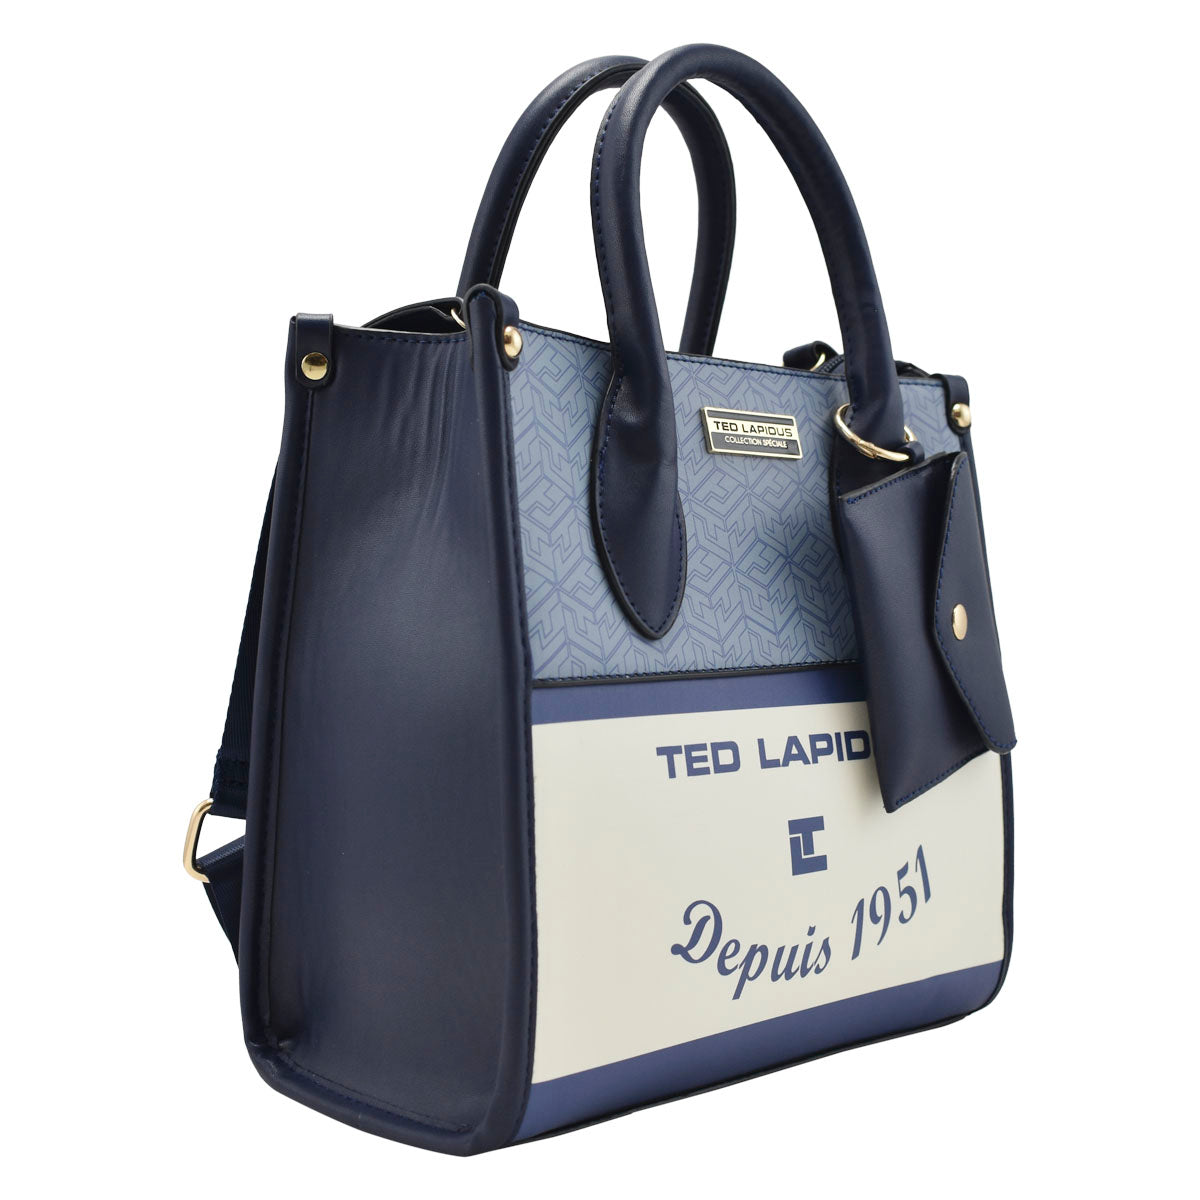 Bolsa Dama Mini Tote Diseño Y Monedero De La Marca Ted Lapidus Color Azul